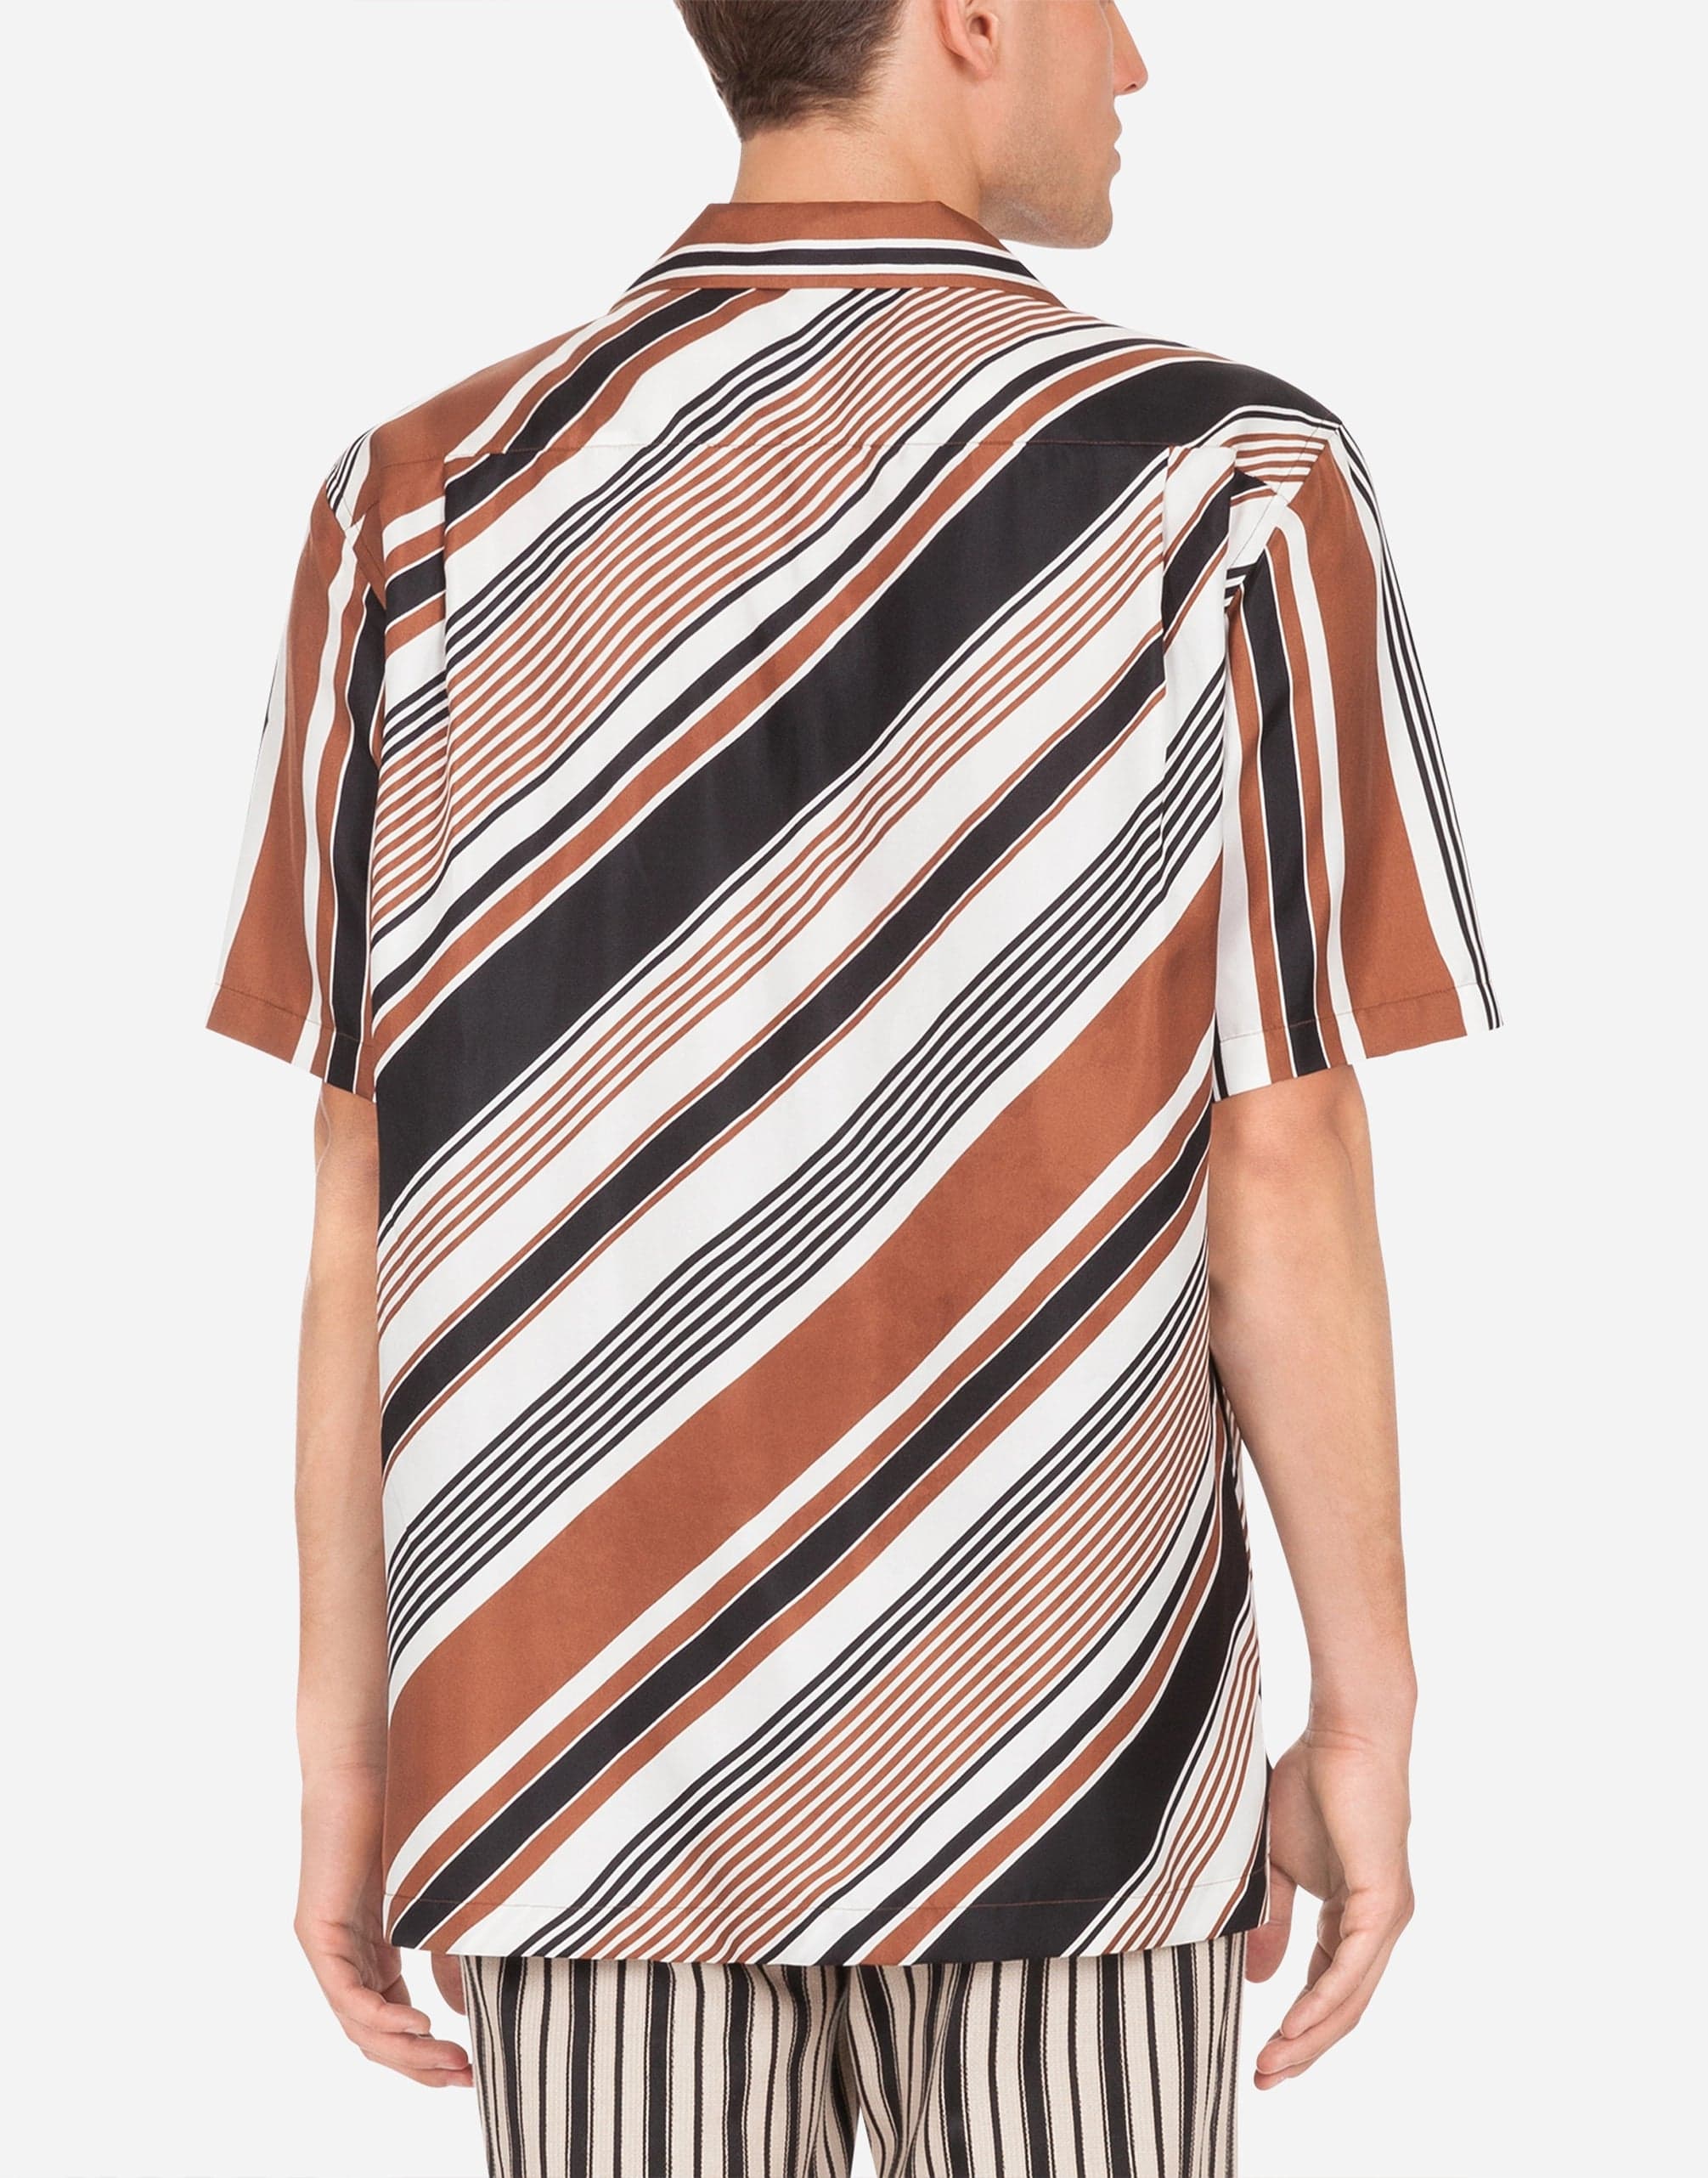 Dolce & Gabbana Silk Hawaii Shirt With Striped Print